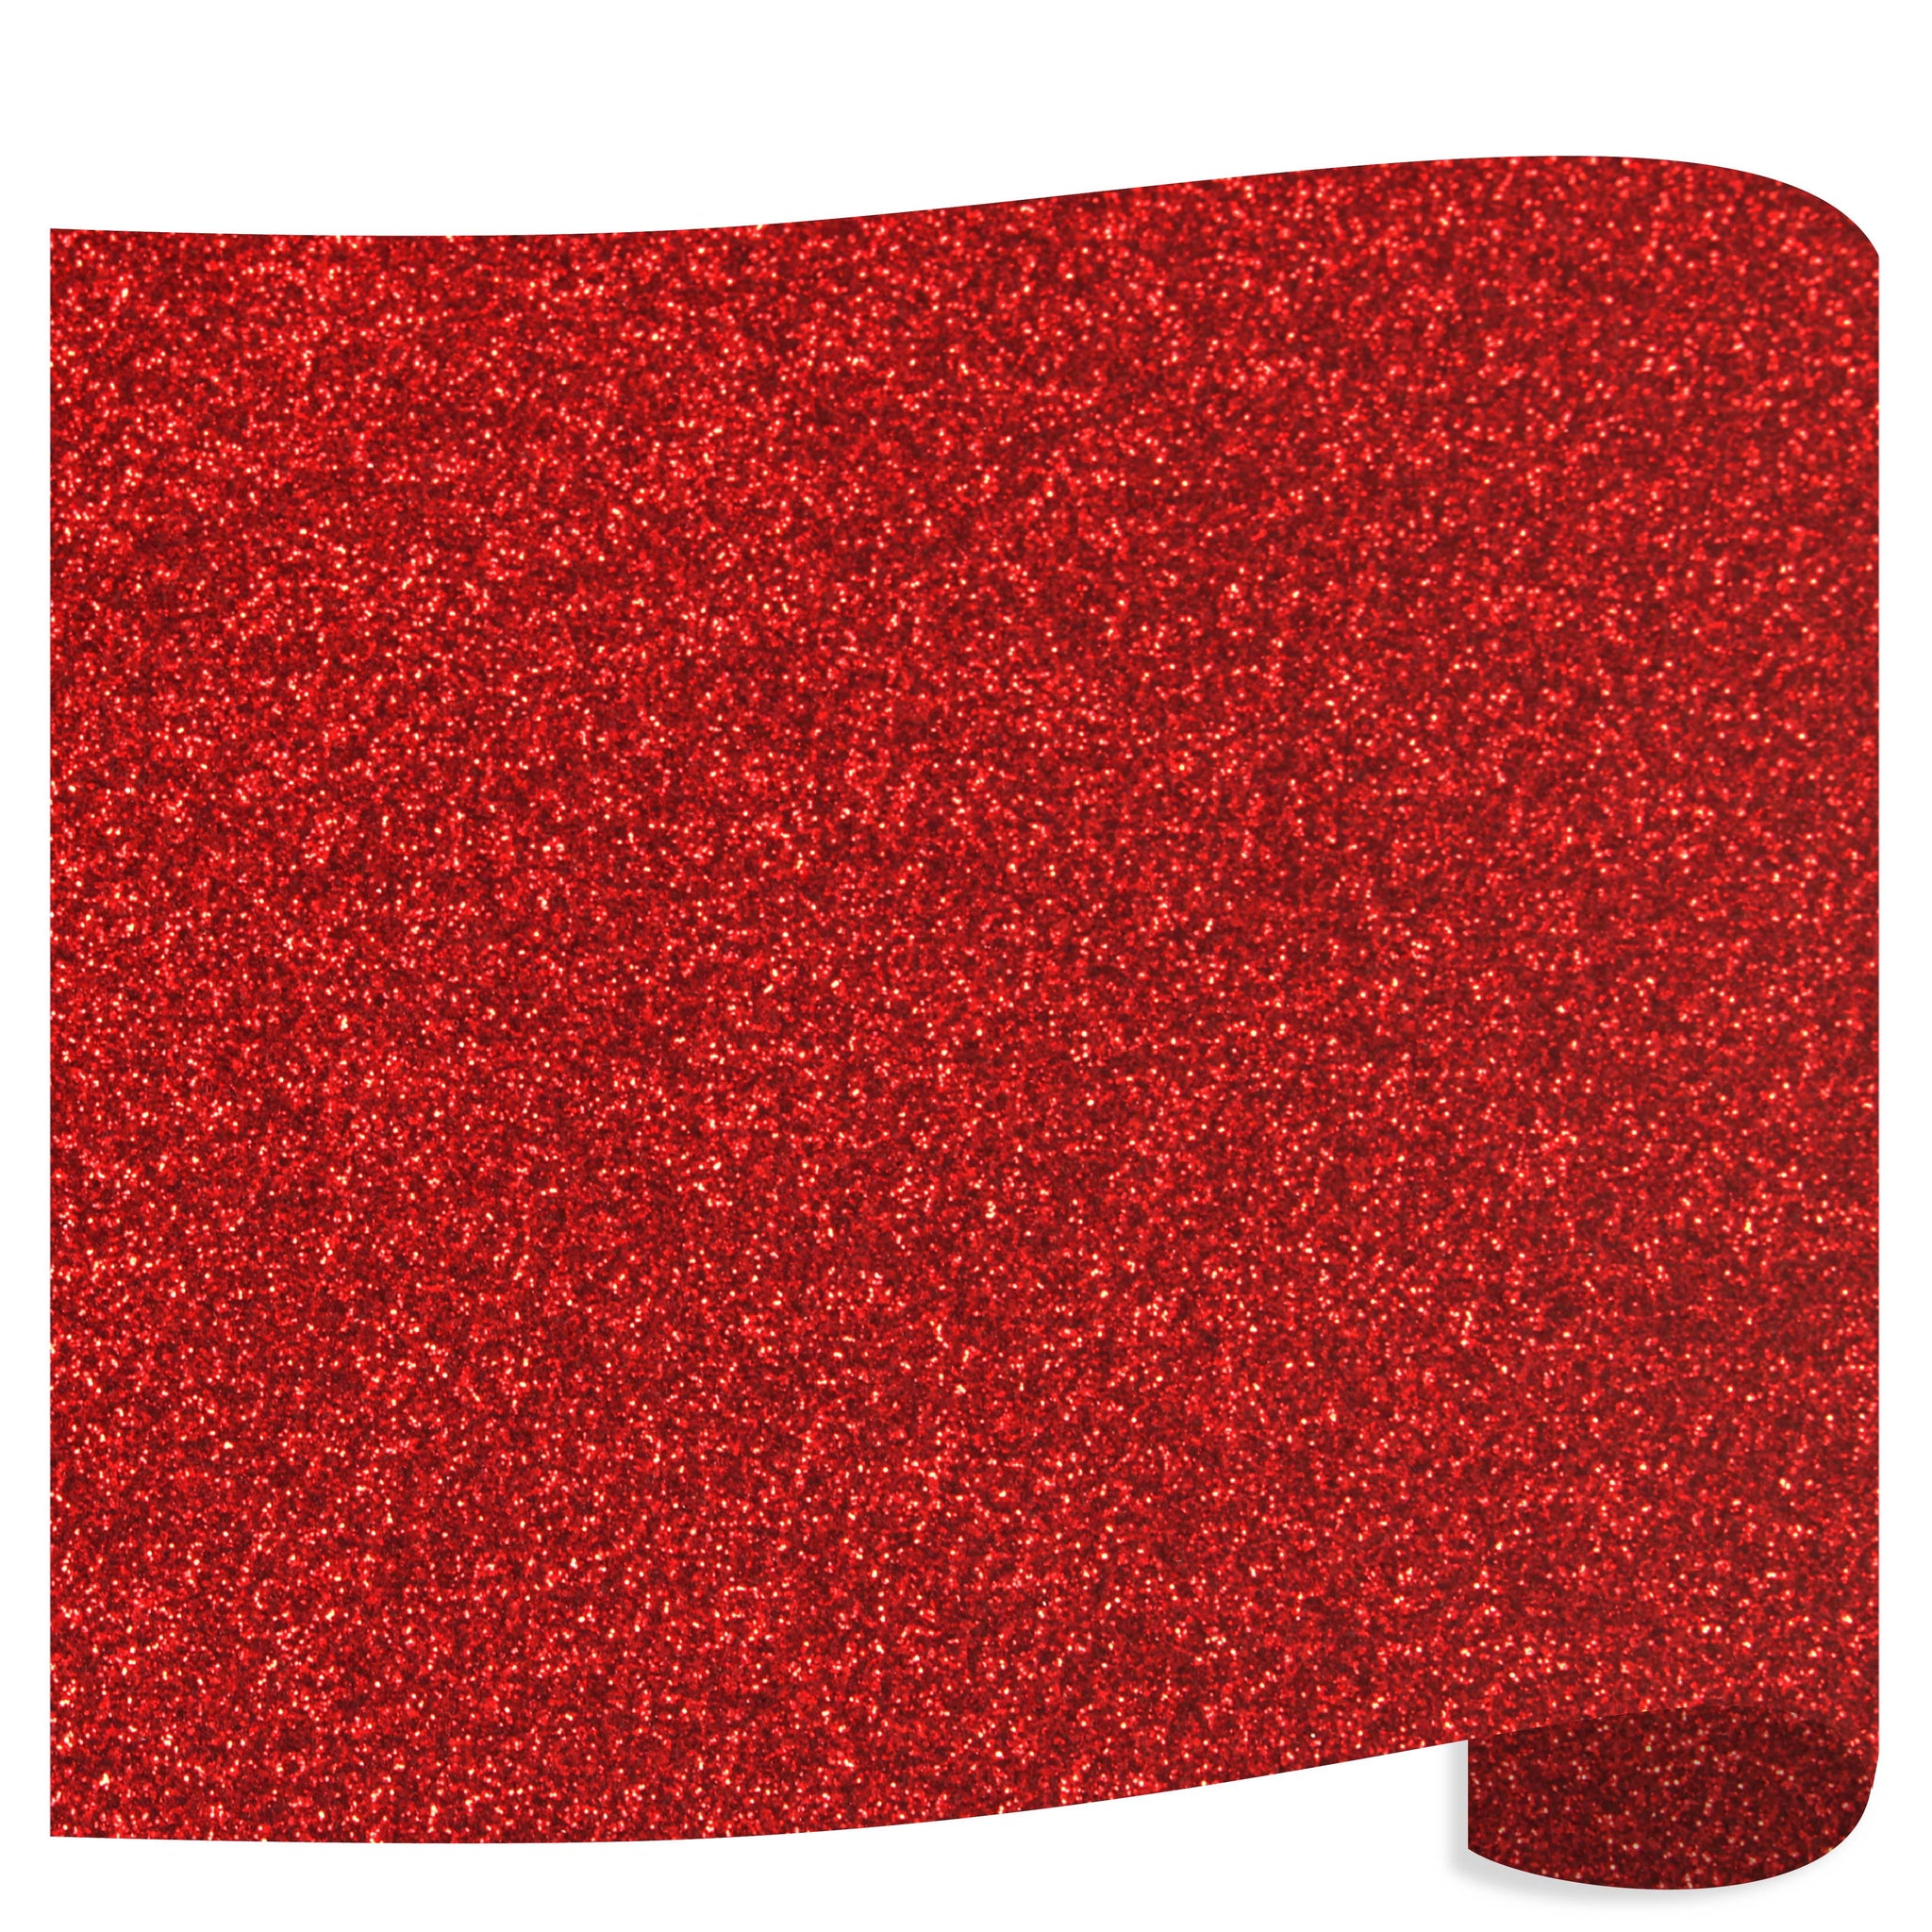 Siser Glitter Heat Transfer Vinyl (HTV) 20 x 150 ft Roll - 45 Colors Available, Red